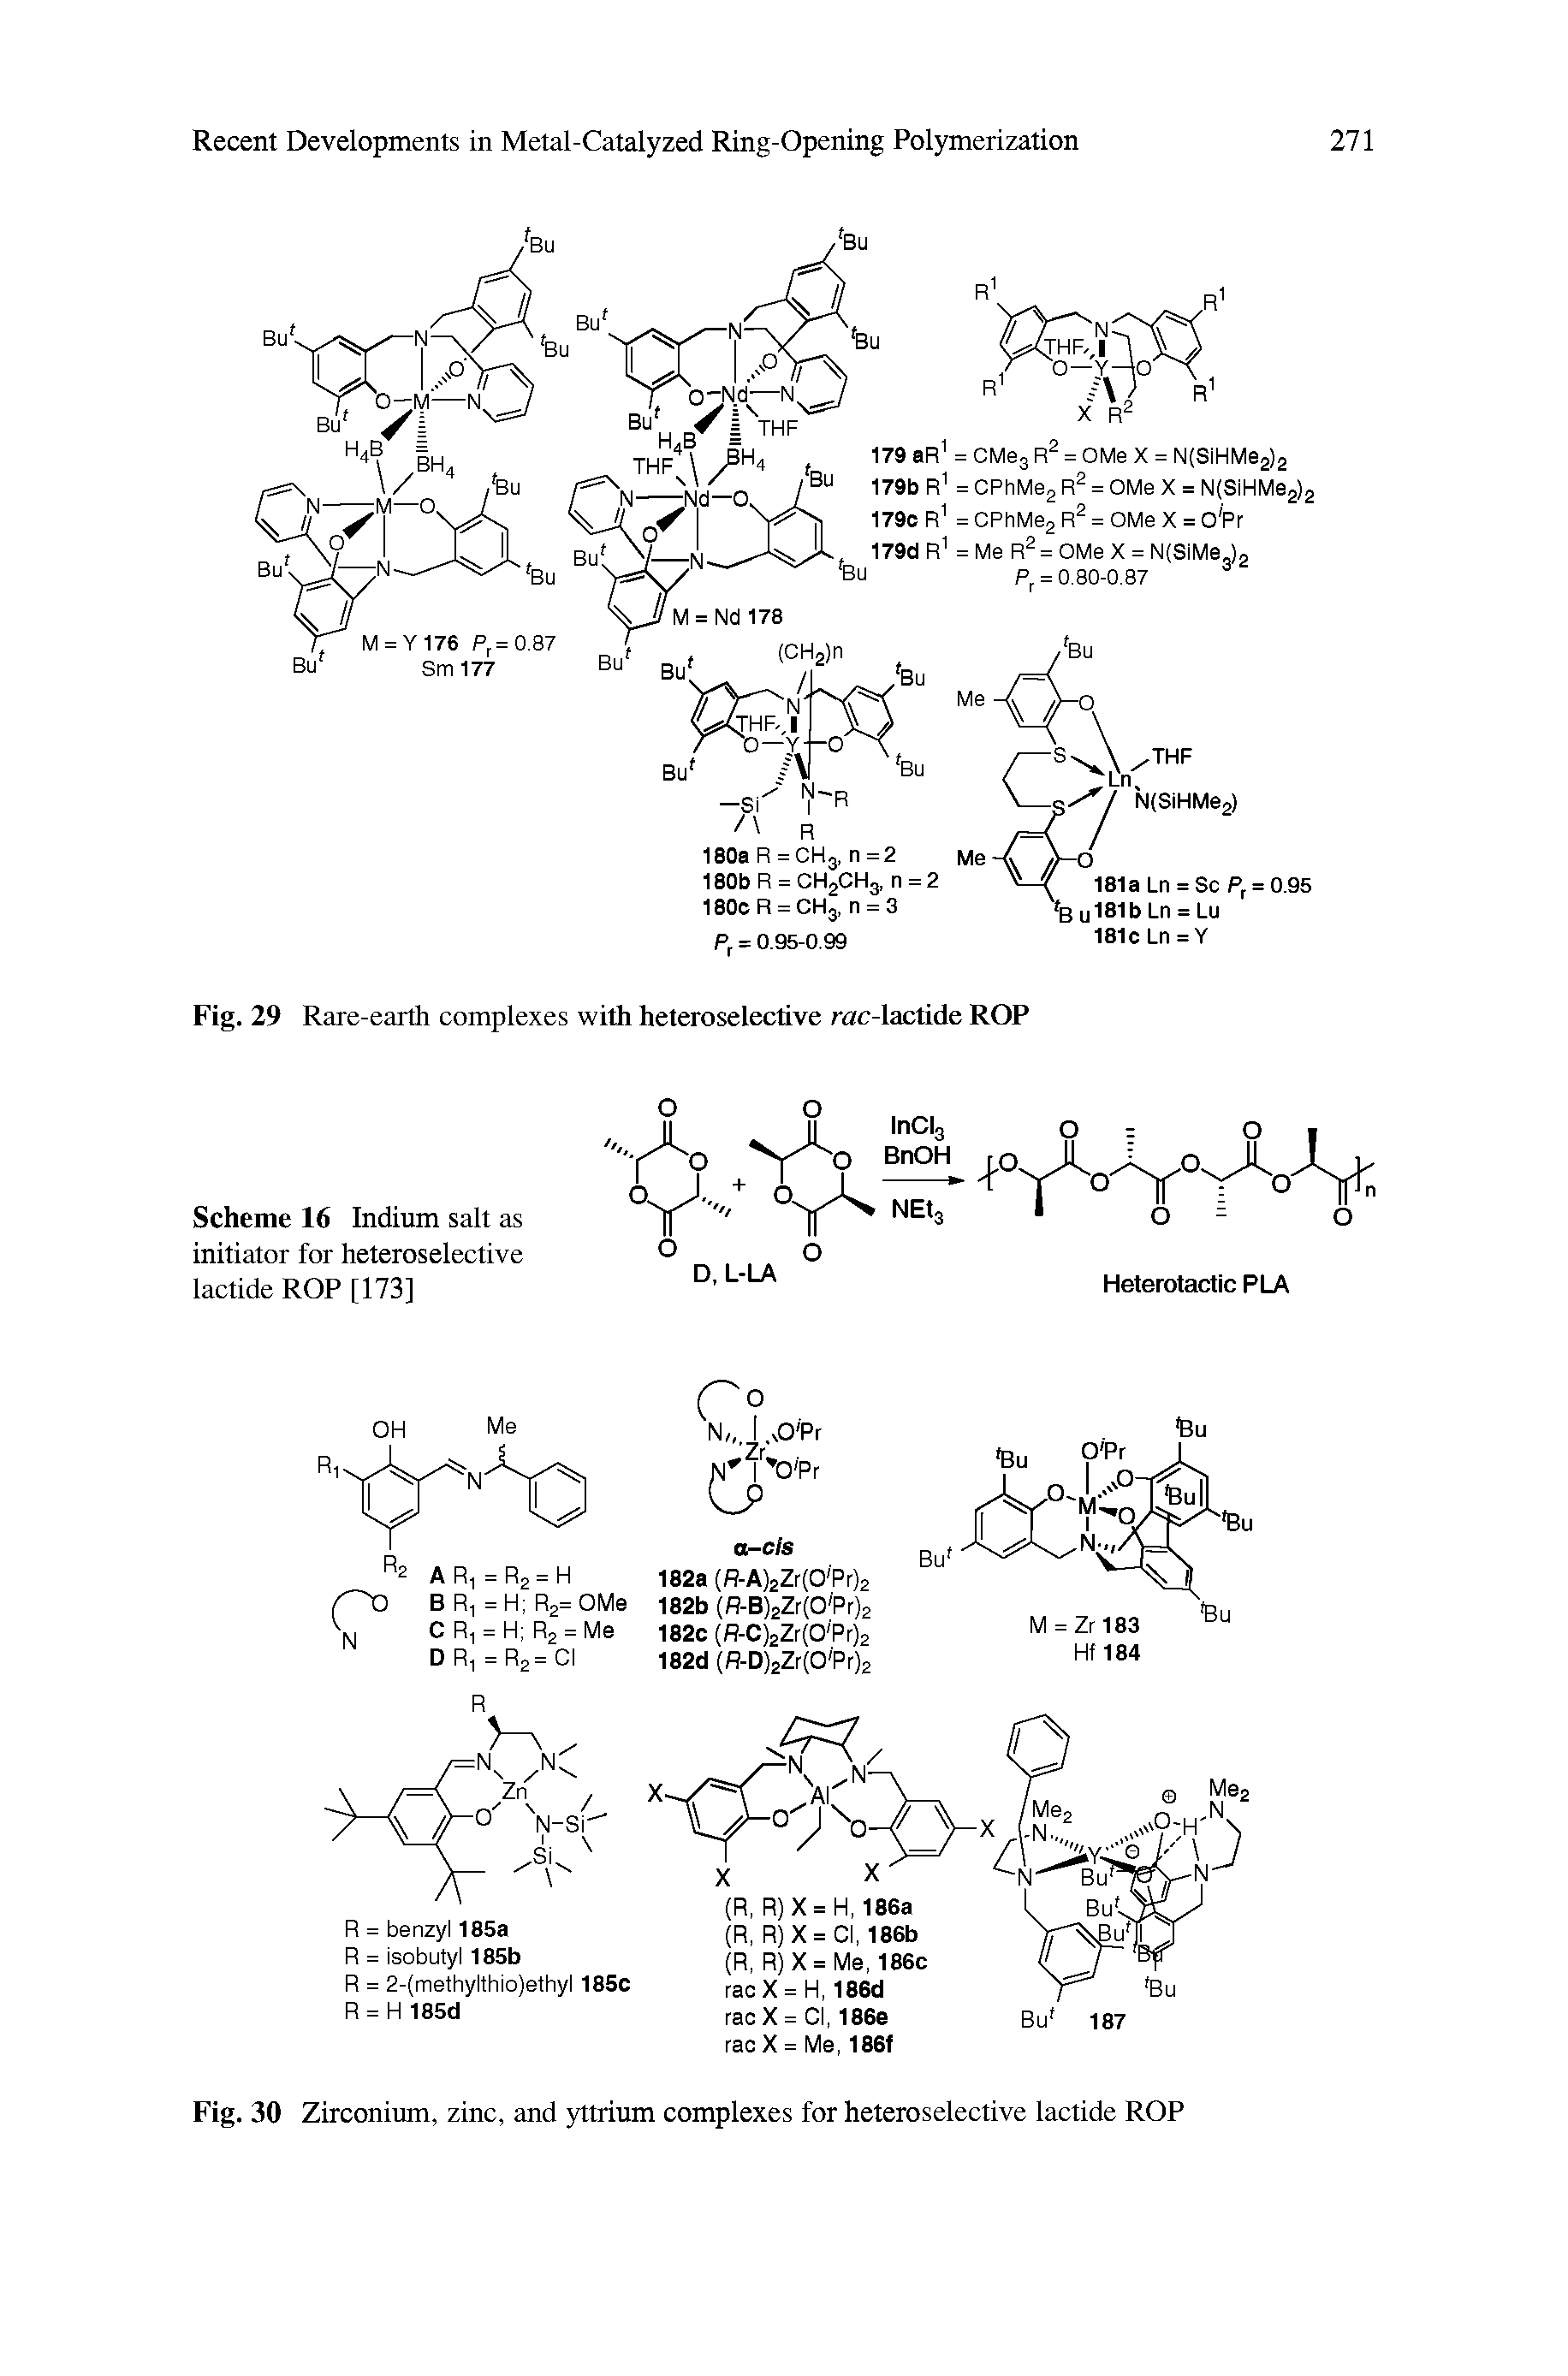 Fig. 30 Zirconium, zinc, and yttrium complexes for heteroselective lactide ROP...